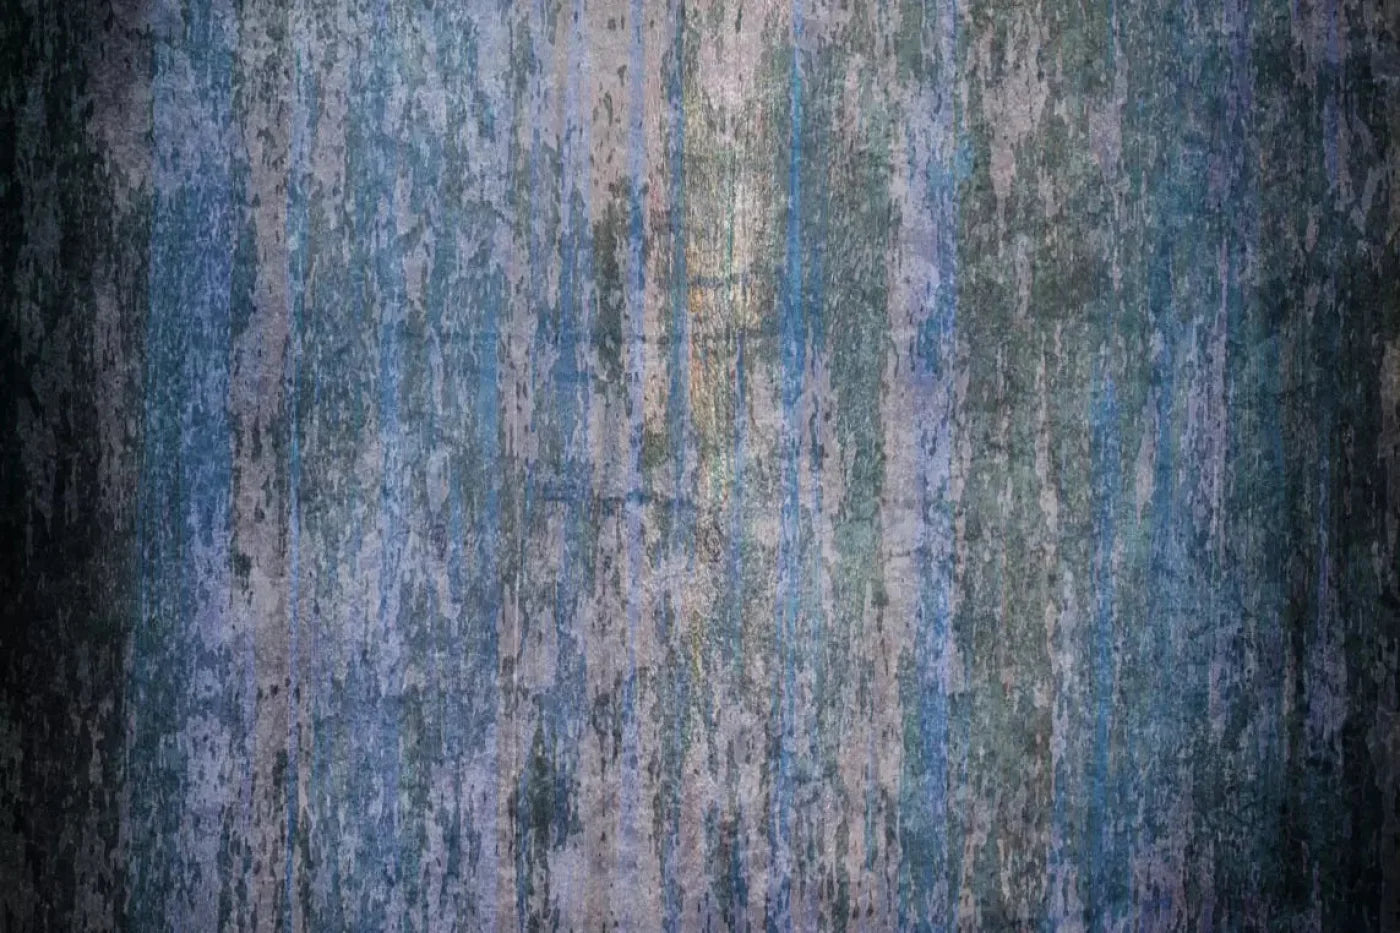 Blueblood 5X4 Rubbermat Floor ( 60 X 48 Inch ) Backdrop